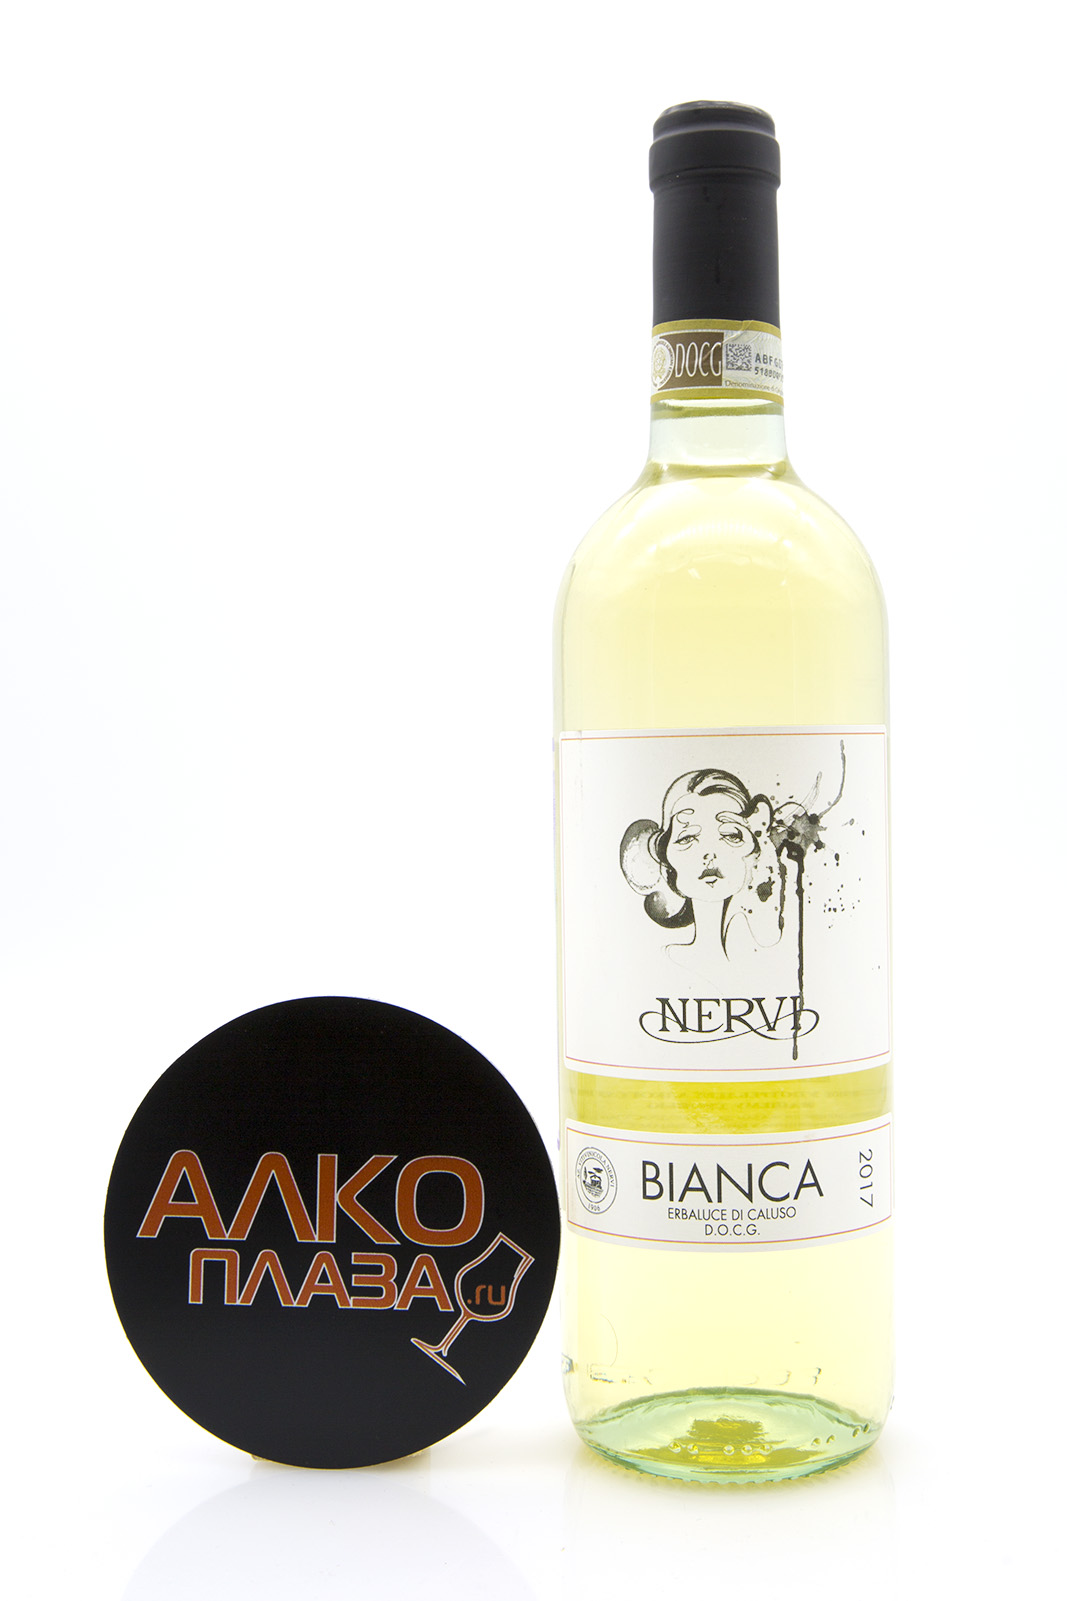 Nervi Bianca Erbaluce di Caluso DOCG - вино Нерви Бьянка Эрбалуче ди Калузо 0.75 л белое сухое